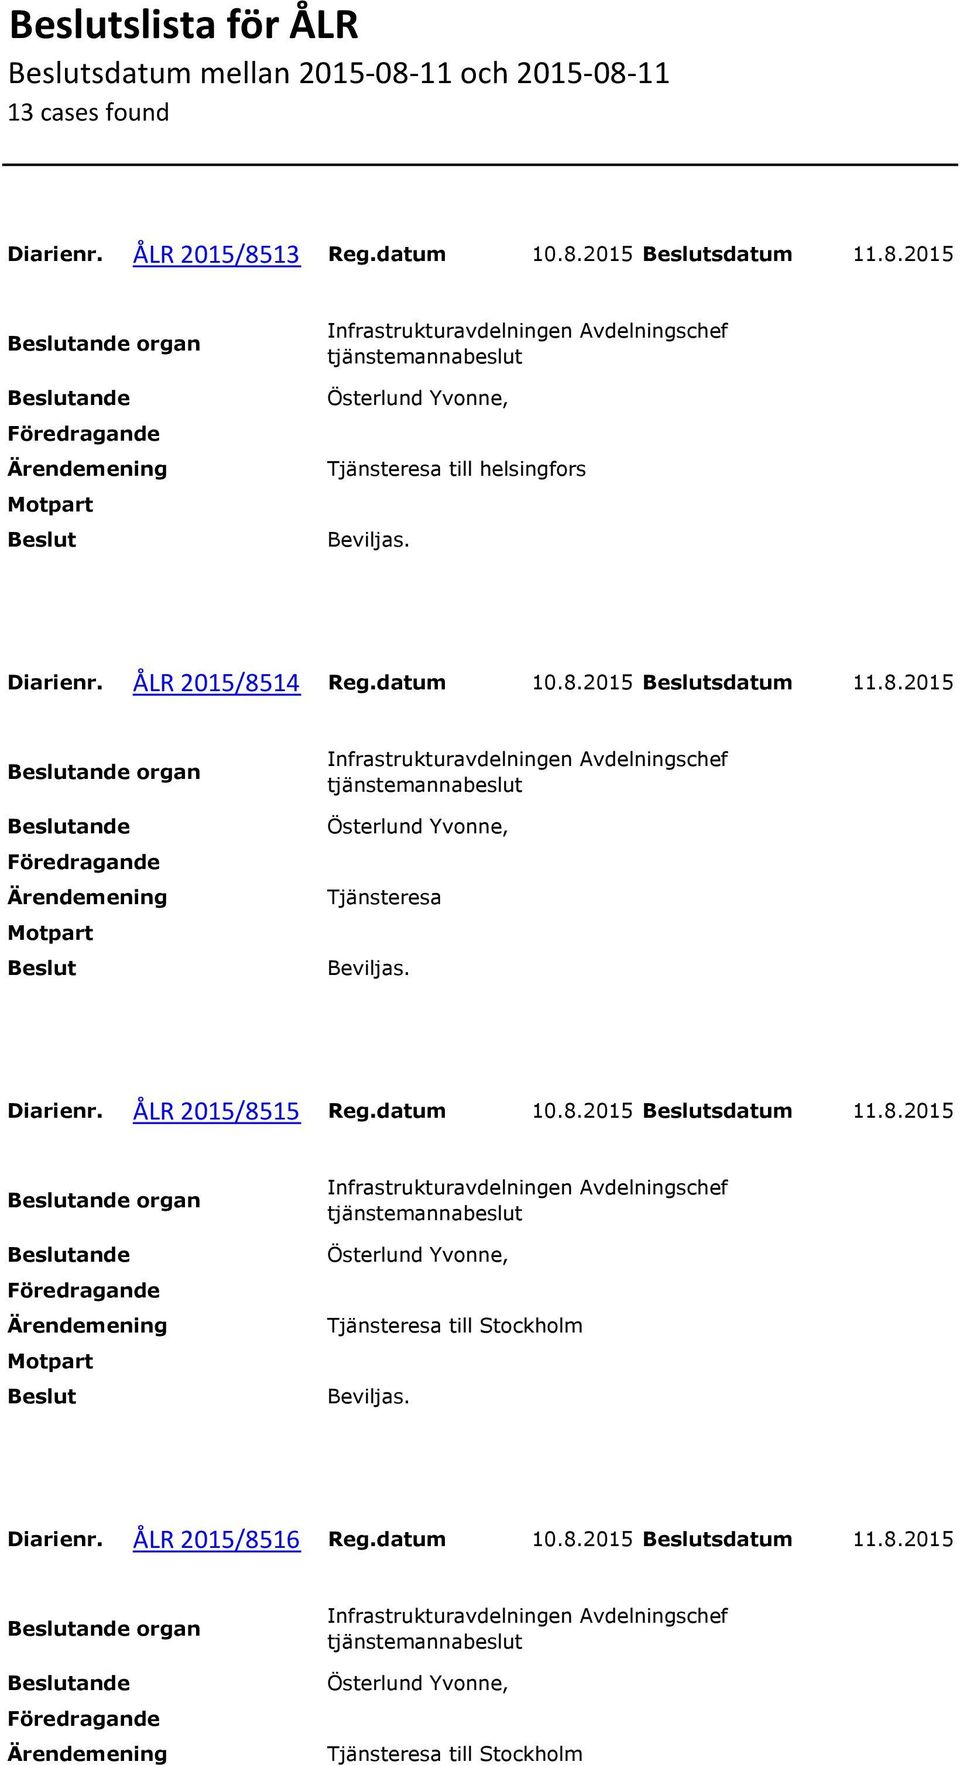 ÅLR 2015/8515 Reg.datum 10.8.2015 sdatum 11.8.2015 organ Tjänsteresa till Stockholm Diarienr.